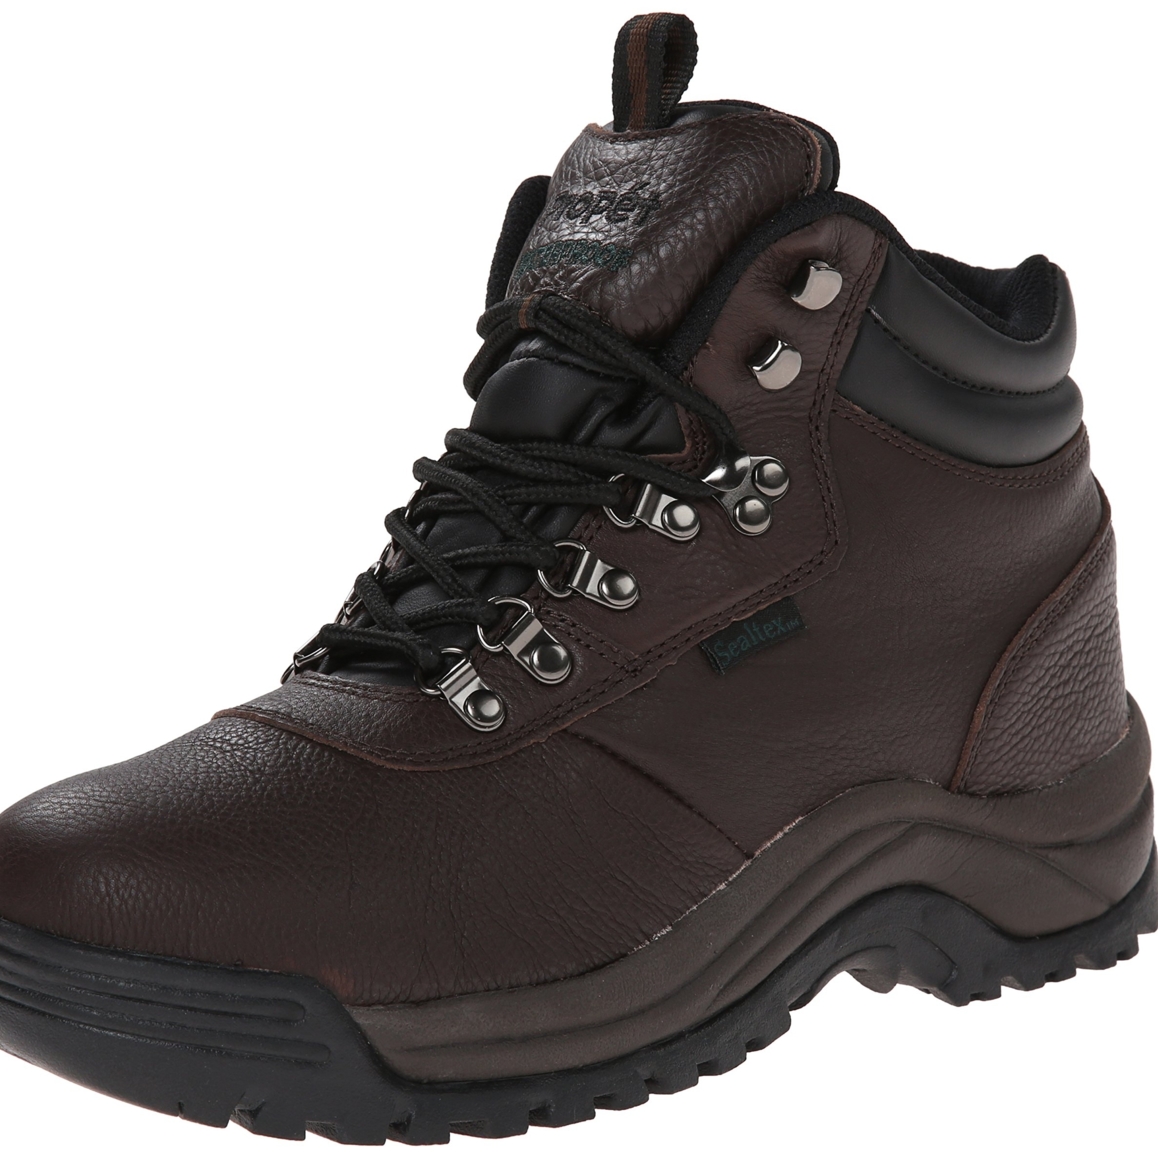 Propet Men's Cliff Walker Hiking Boot Bronco Brown - M3188BRO - BRONCO BROWN, 14 X-Wide